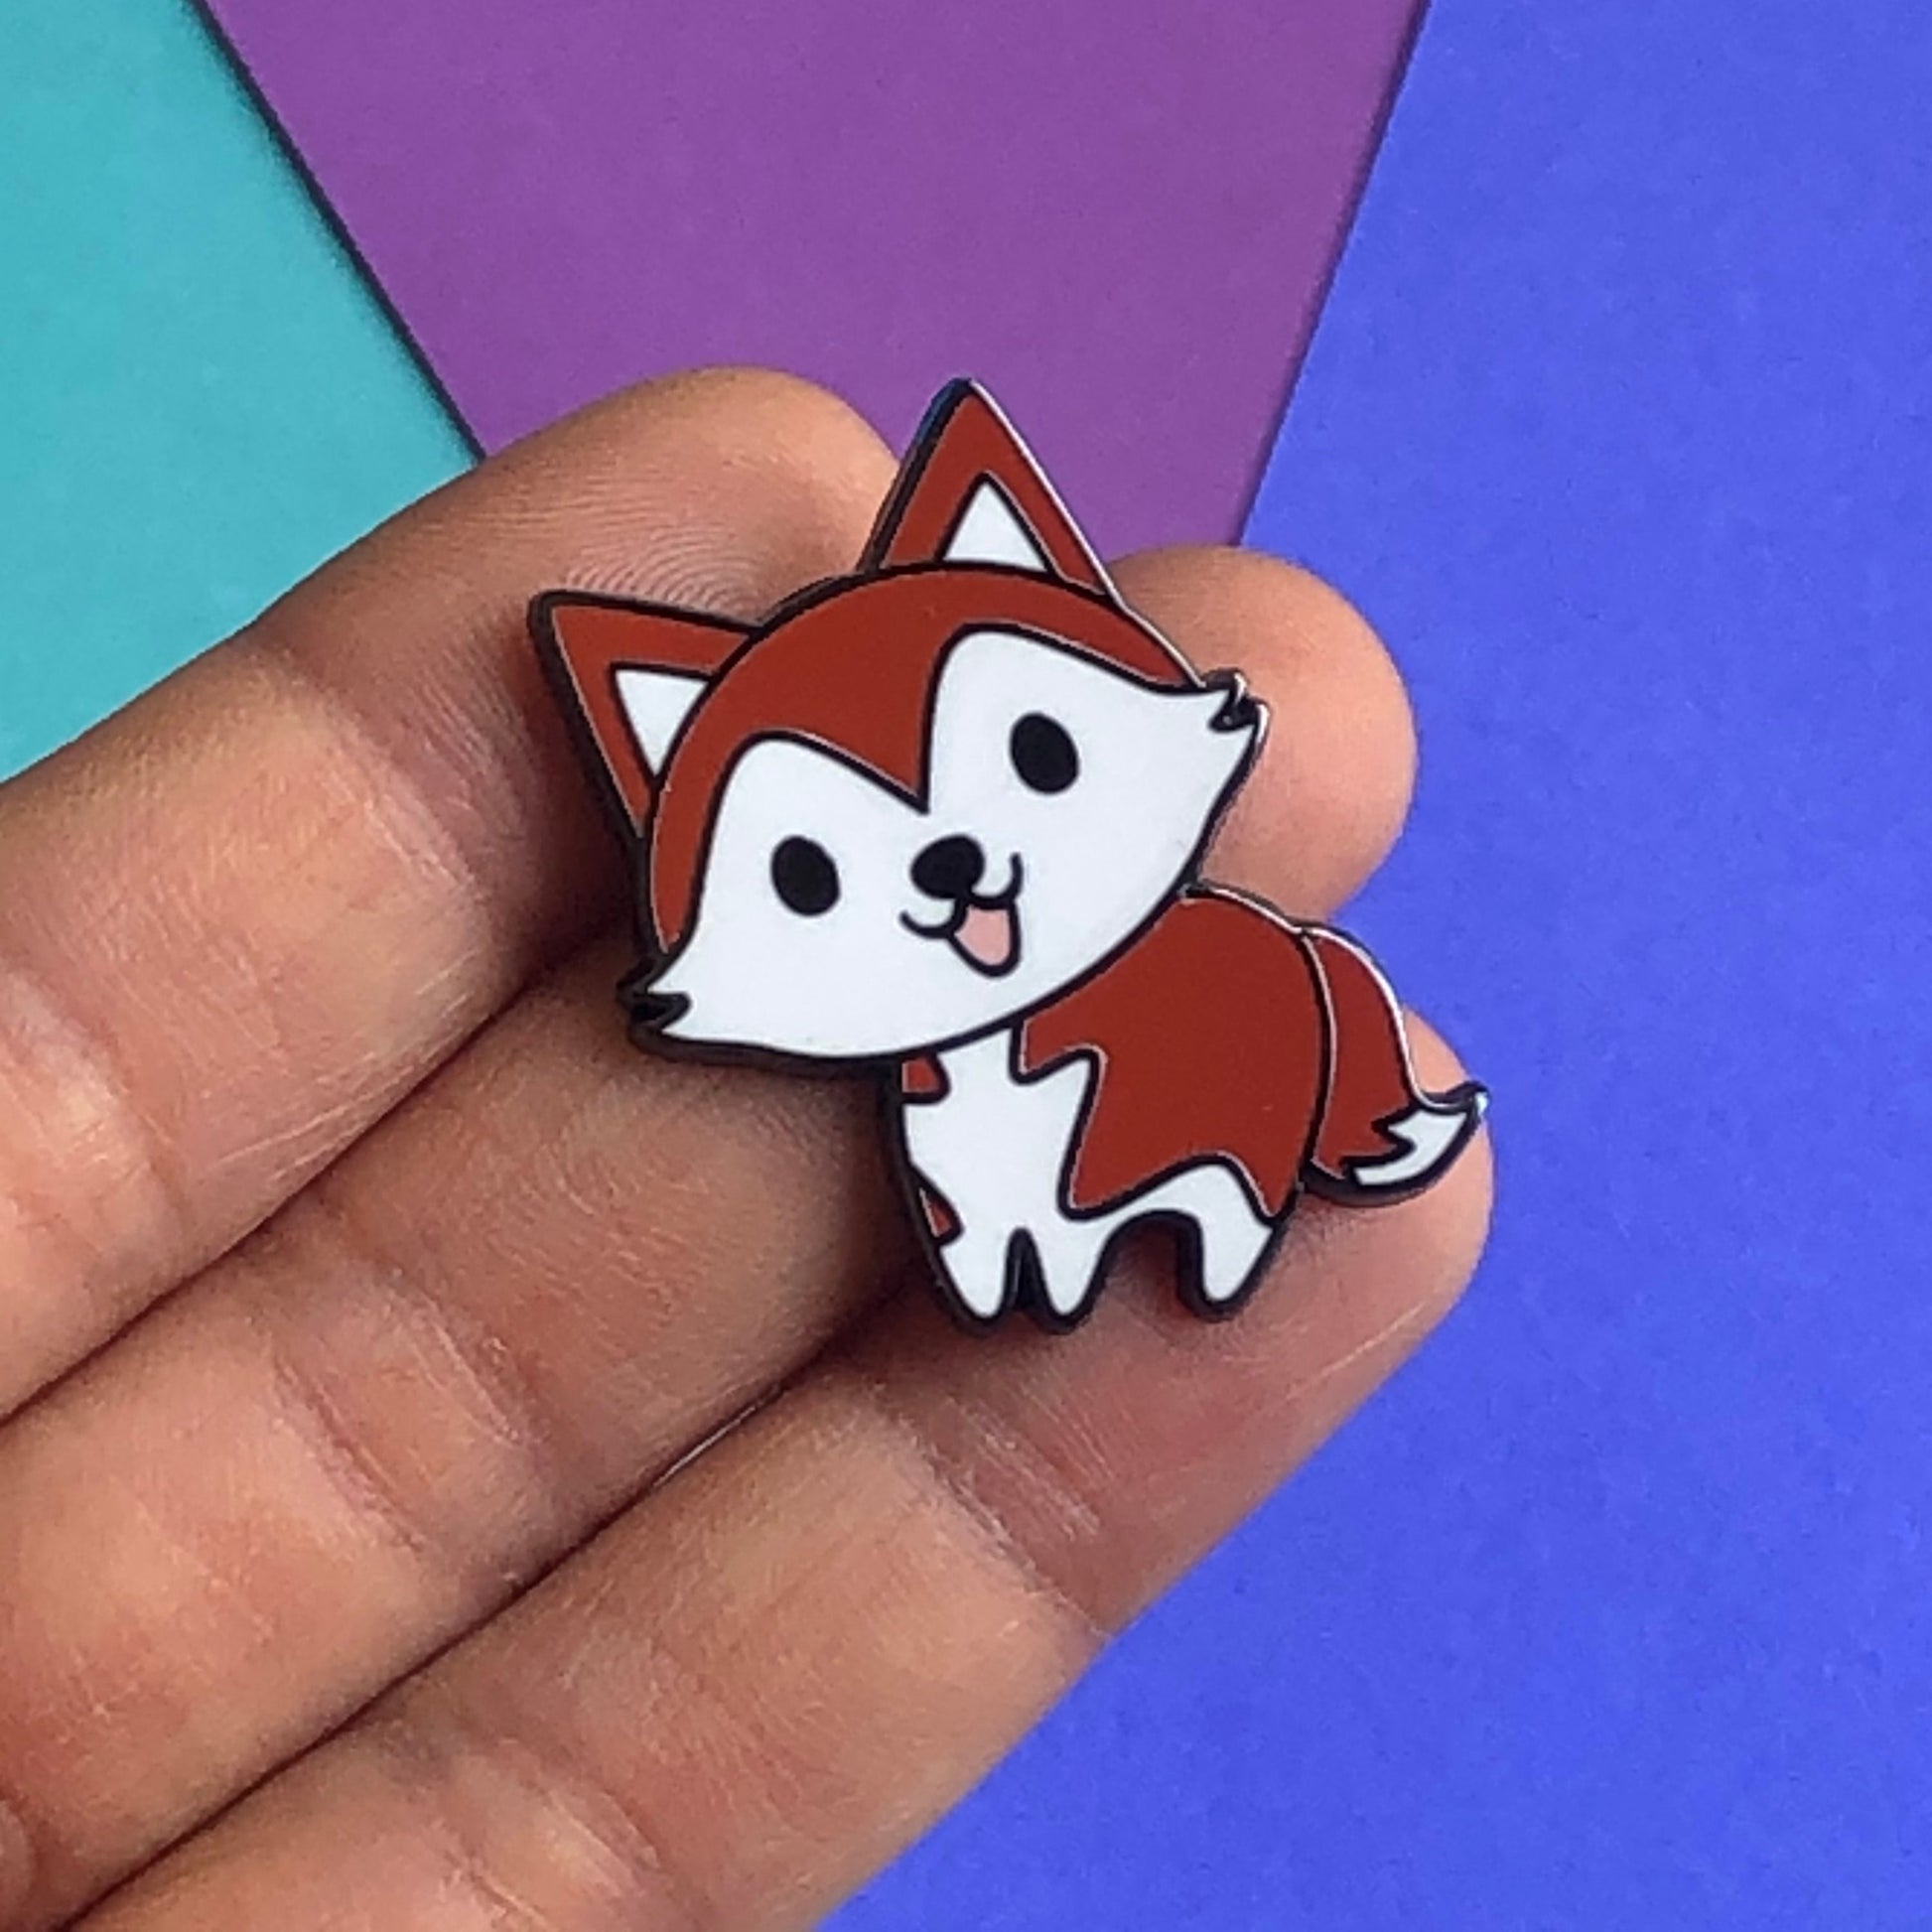 A Little Husky enamel pin, happy husky pin, cute husky pin, chibi husky puppy, happy dog pin